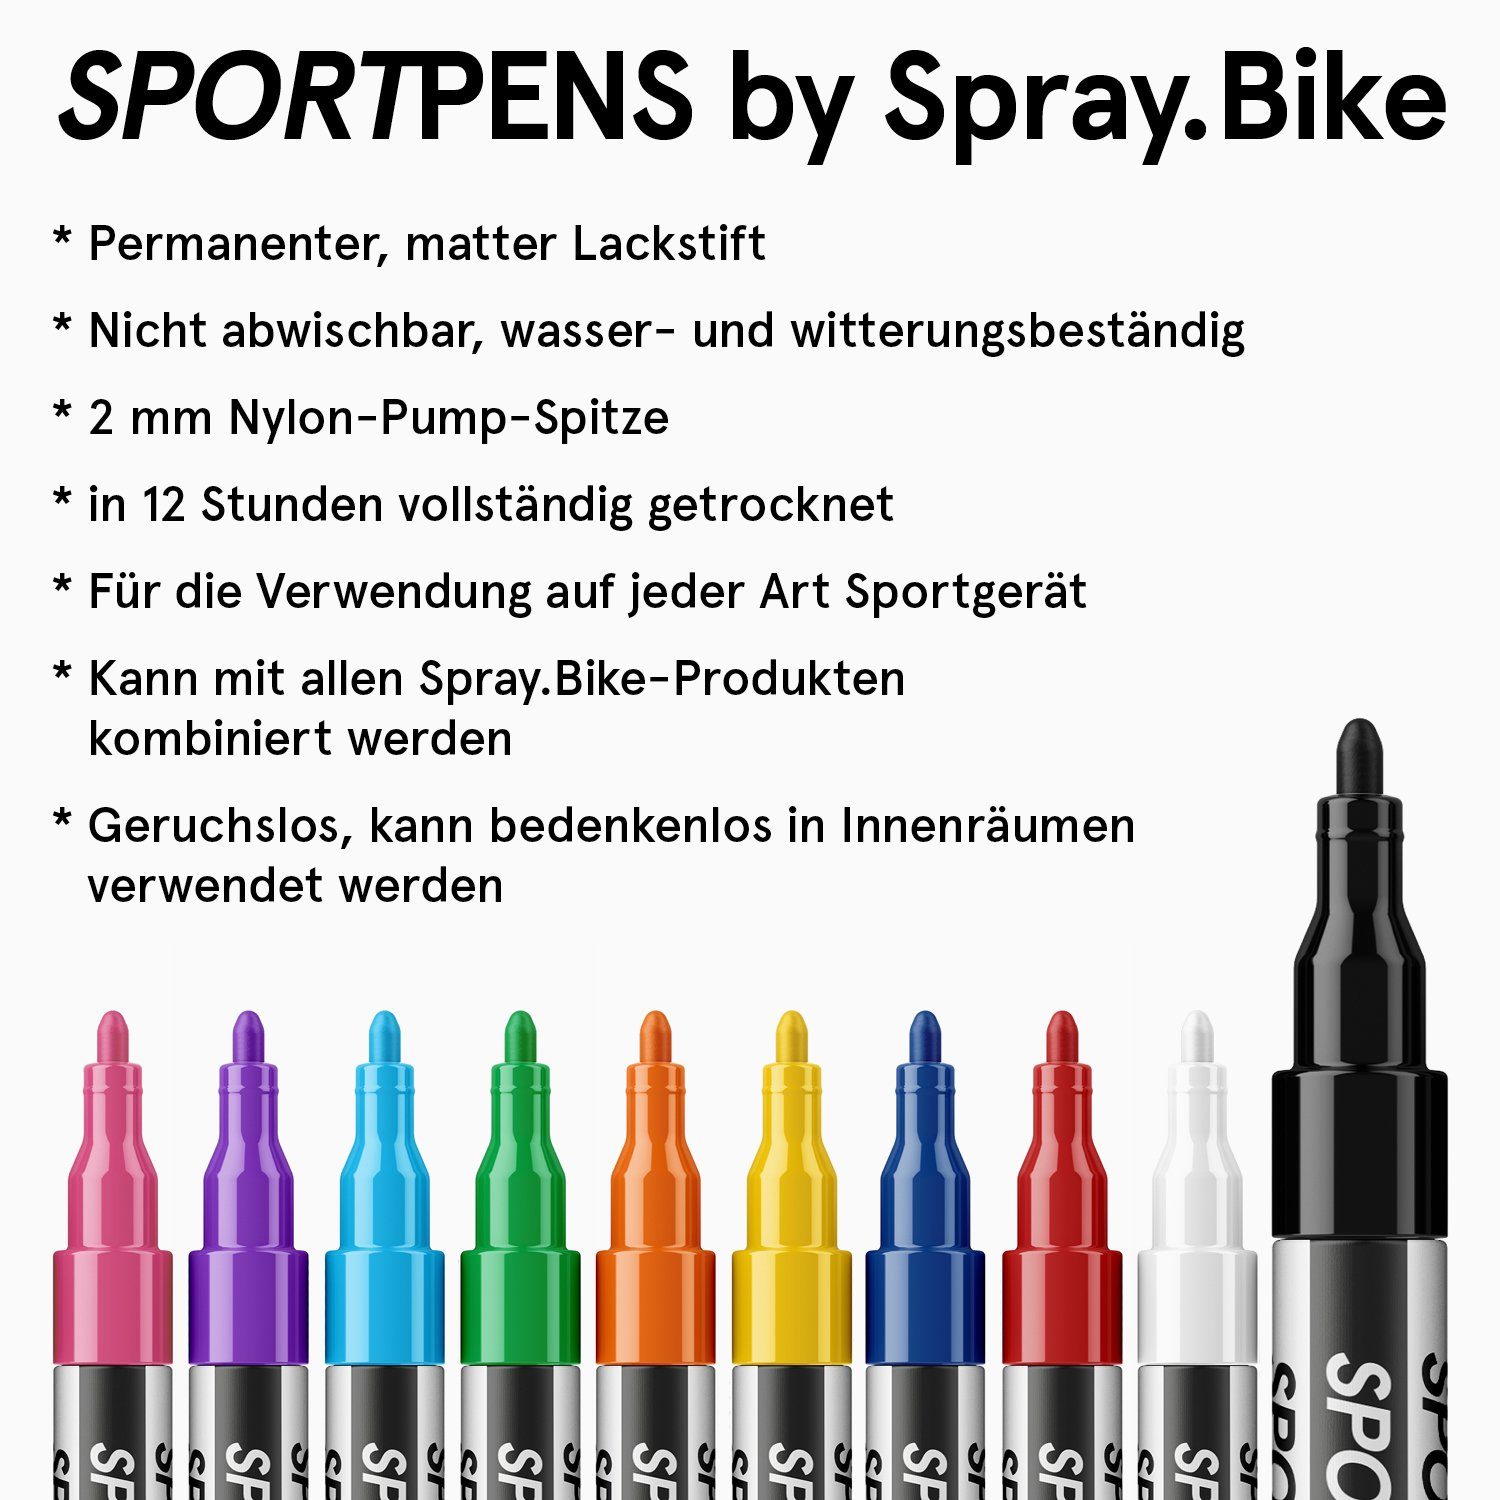 deckender Lackmarker, wasserfester Acrylstift Multimarker Marker - SportPens Standard Spray.Bike White